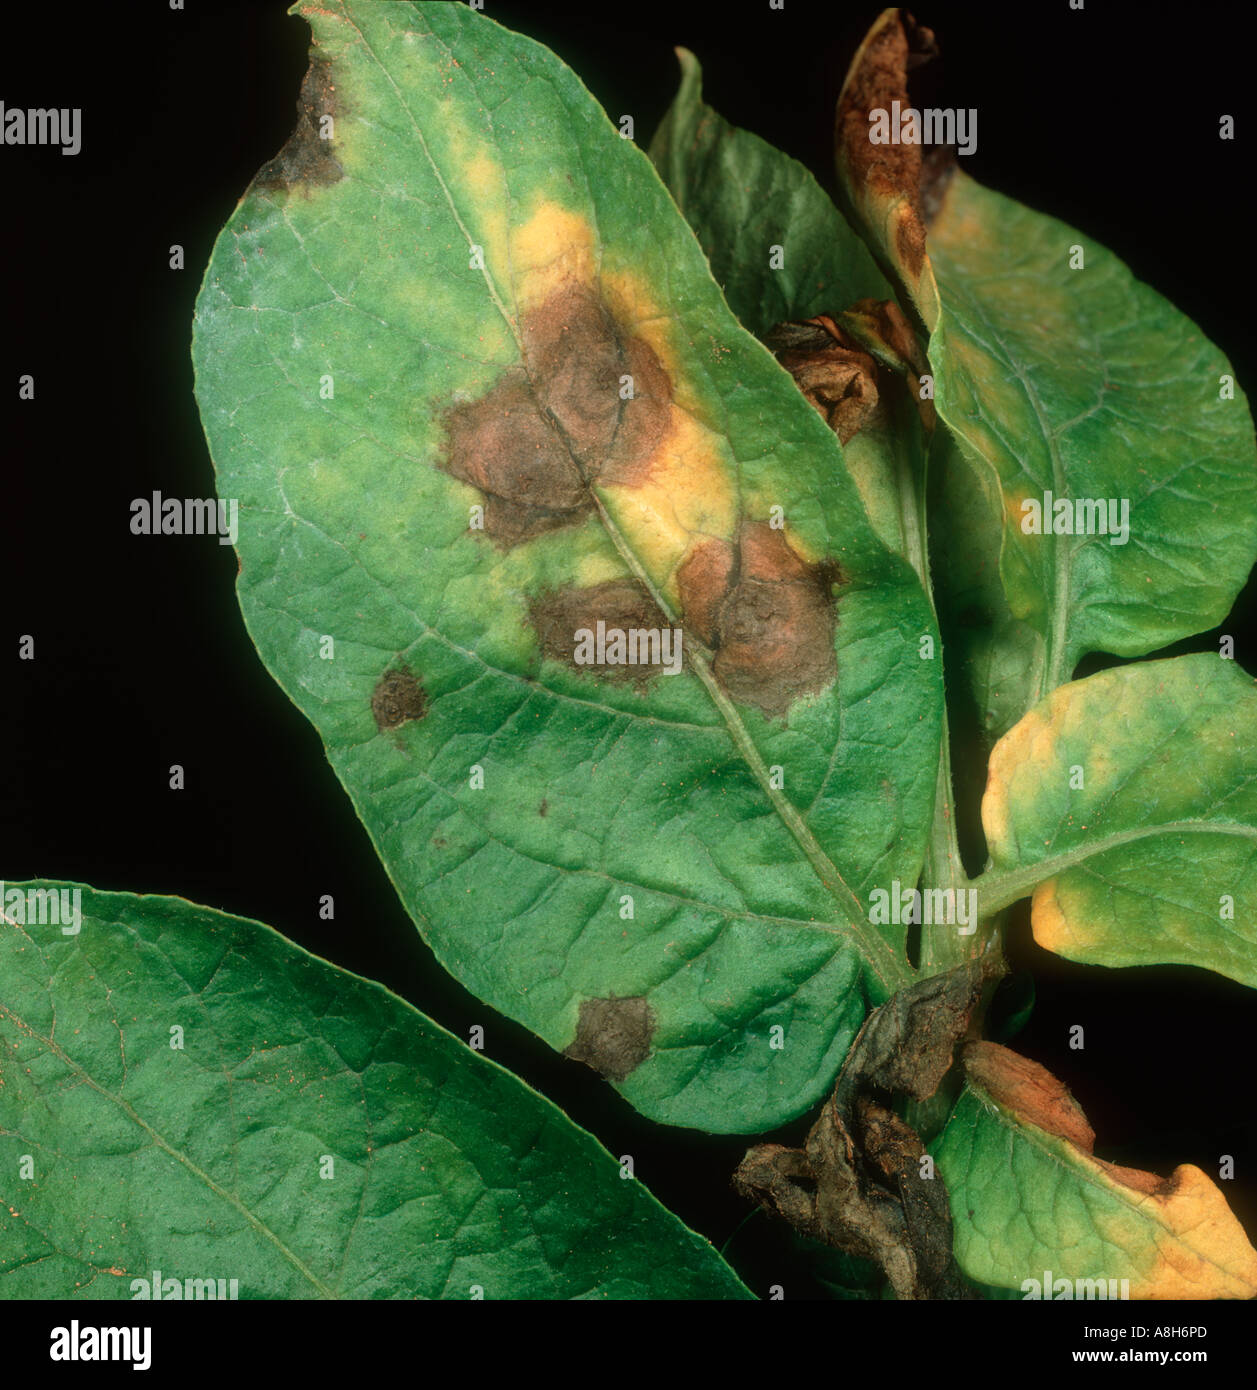 Potato early blight Alternaria alternata lesions on potato leaf Stock Photo